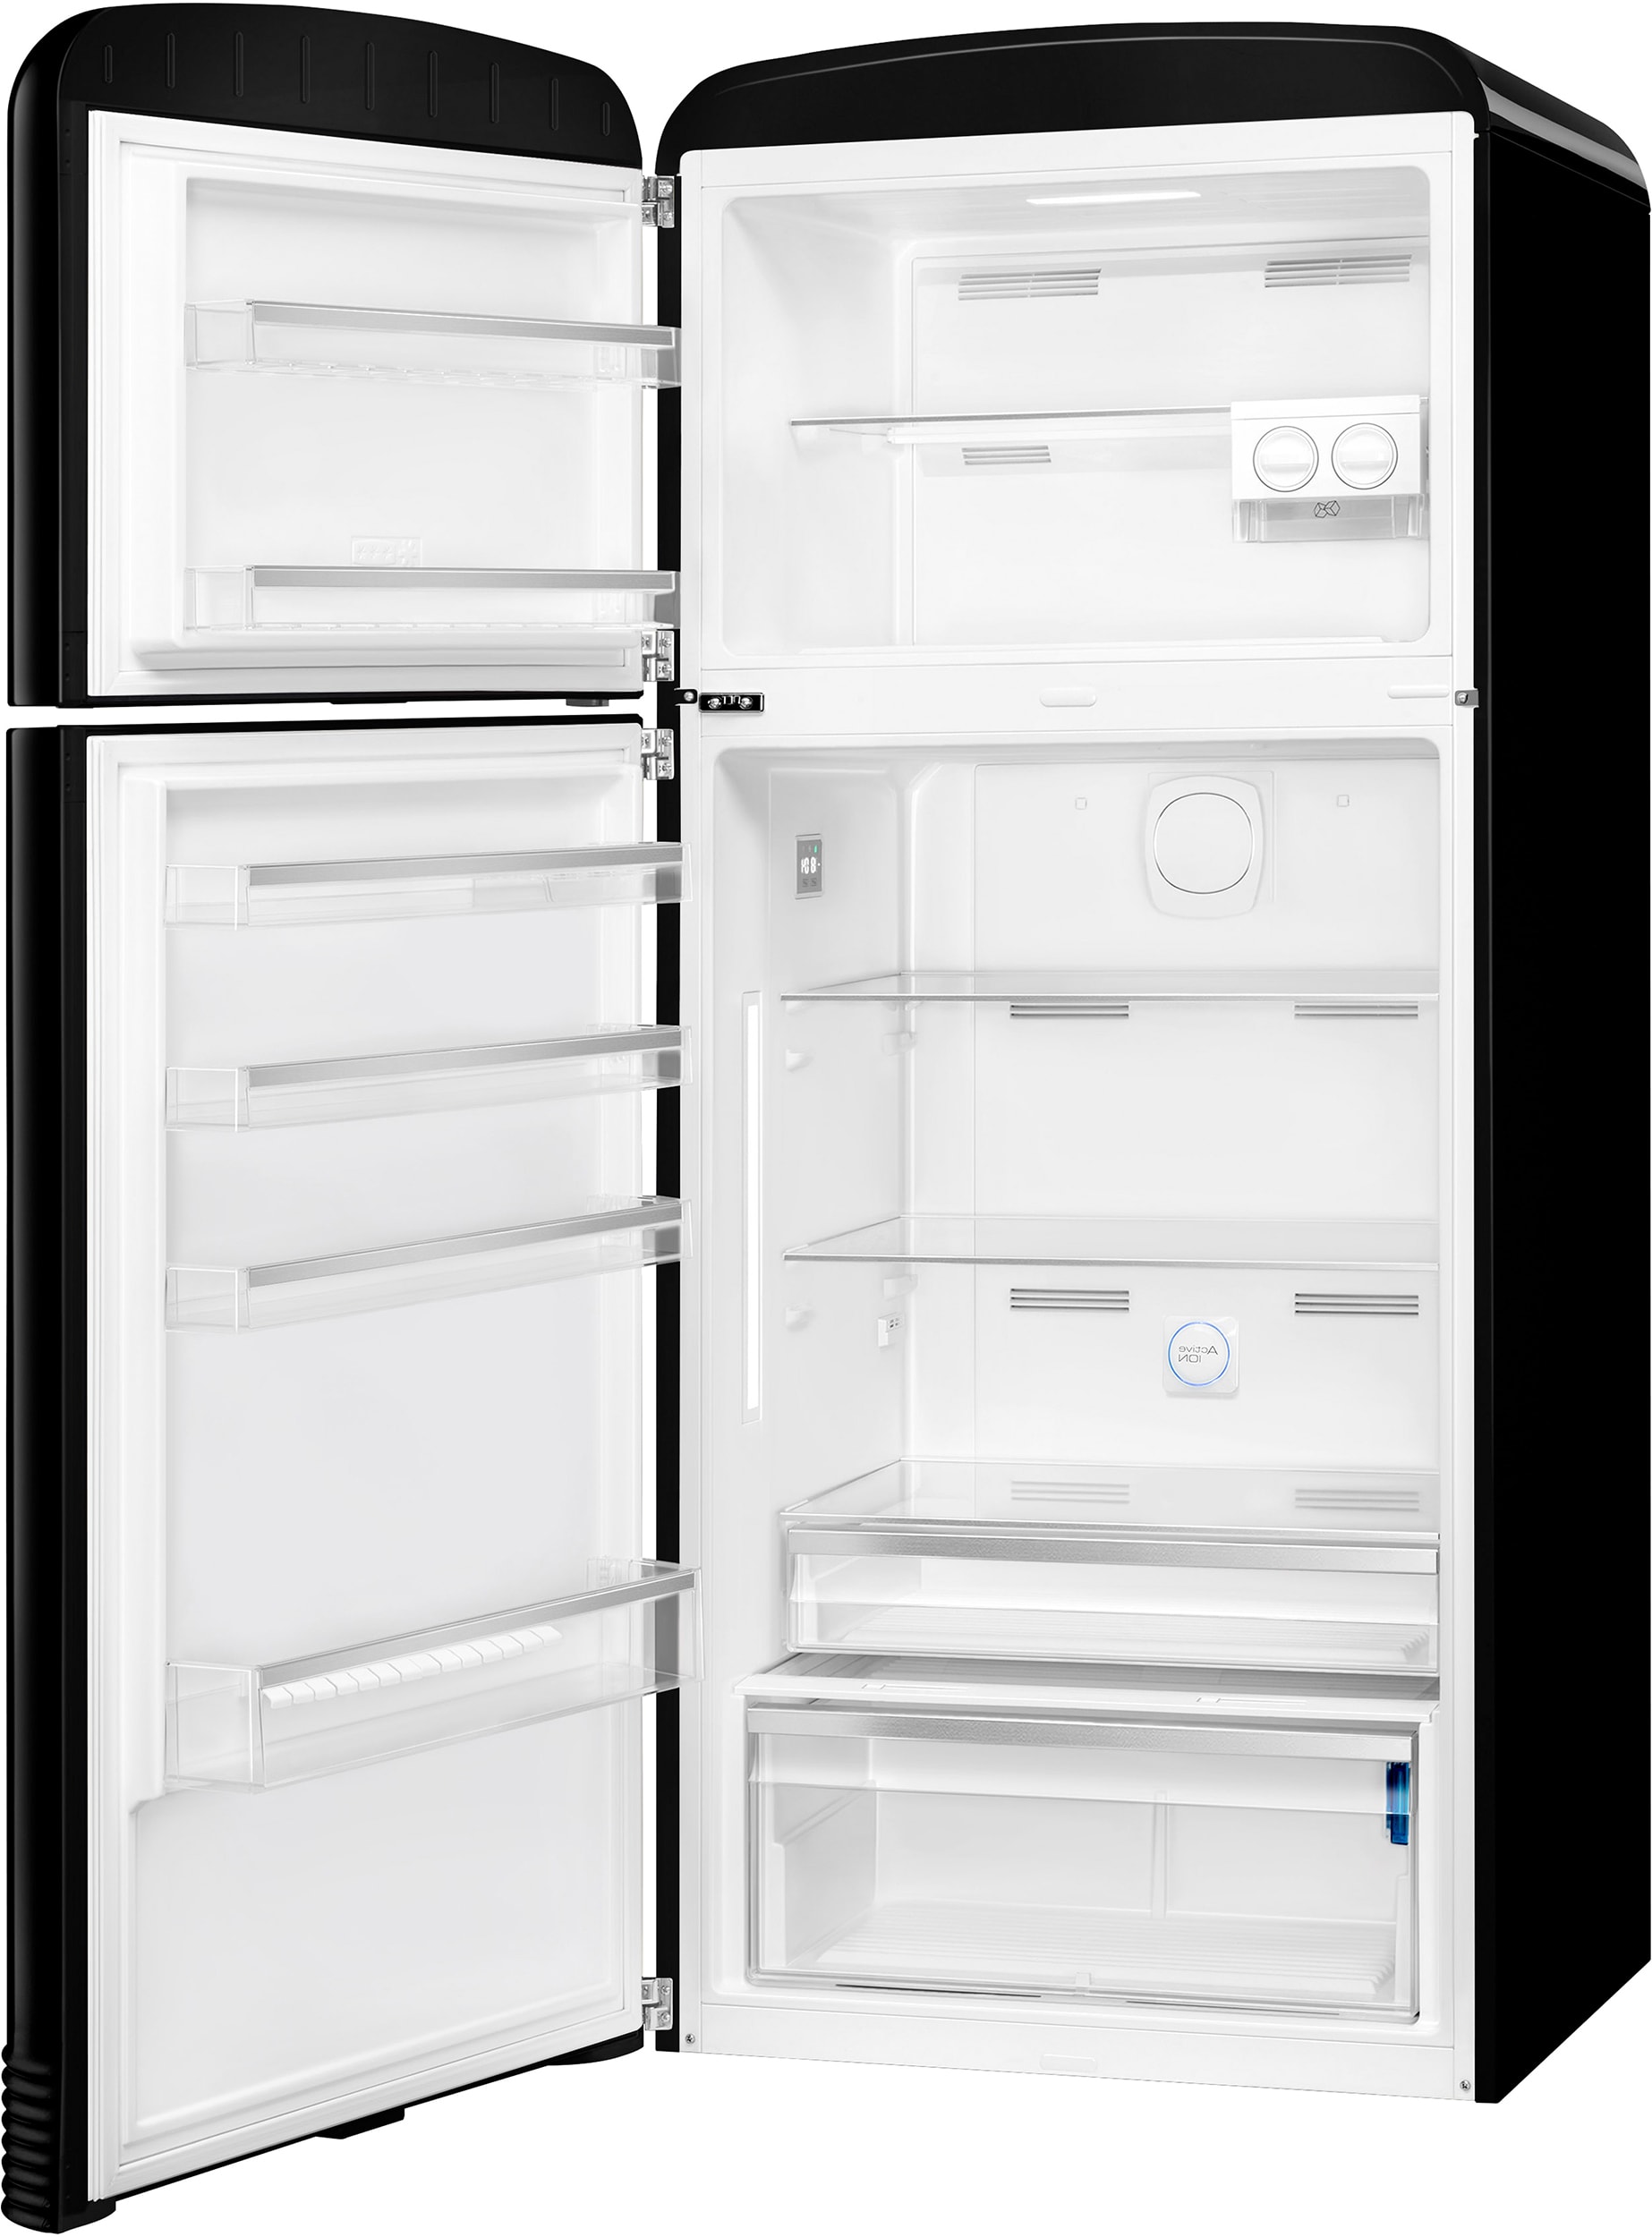 FAB32LBL5 SMEG Réfrigérateur combiné pas cher ✔️ Garantie 5 ans OFFERTE